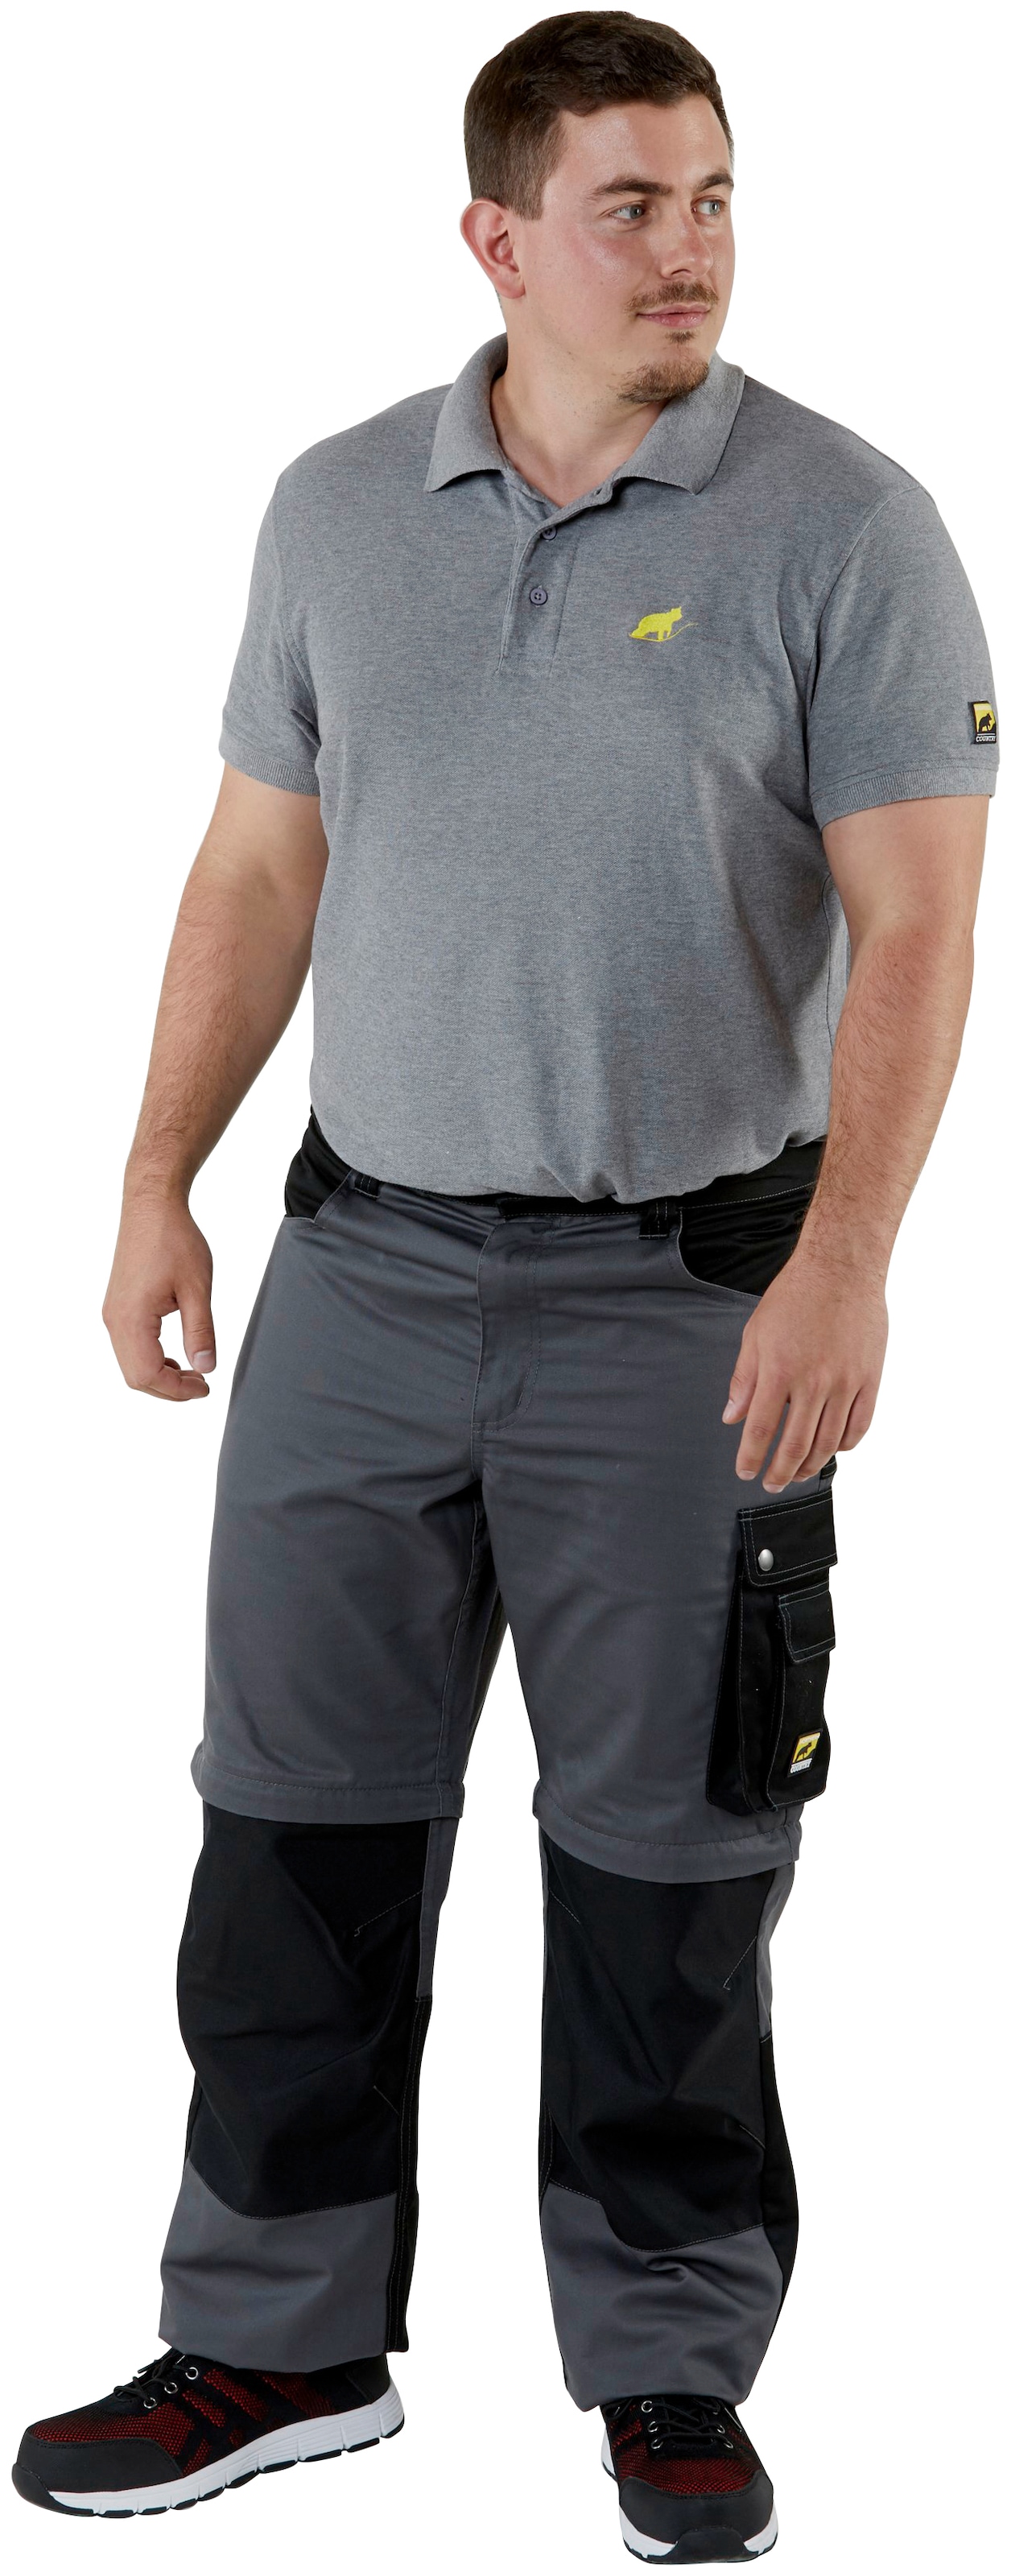 Northern Country Arbeitshose »Worker«, (verstärkter Kniebereich, Beinverlängerung möglich, 8 Taschen), mit Zipp-off Funktion: Shorts und lange Arbeitshose in einem